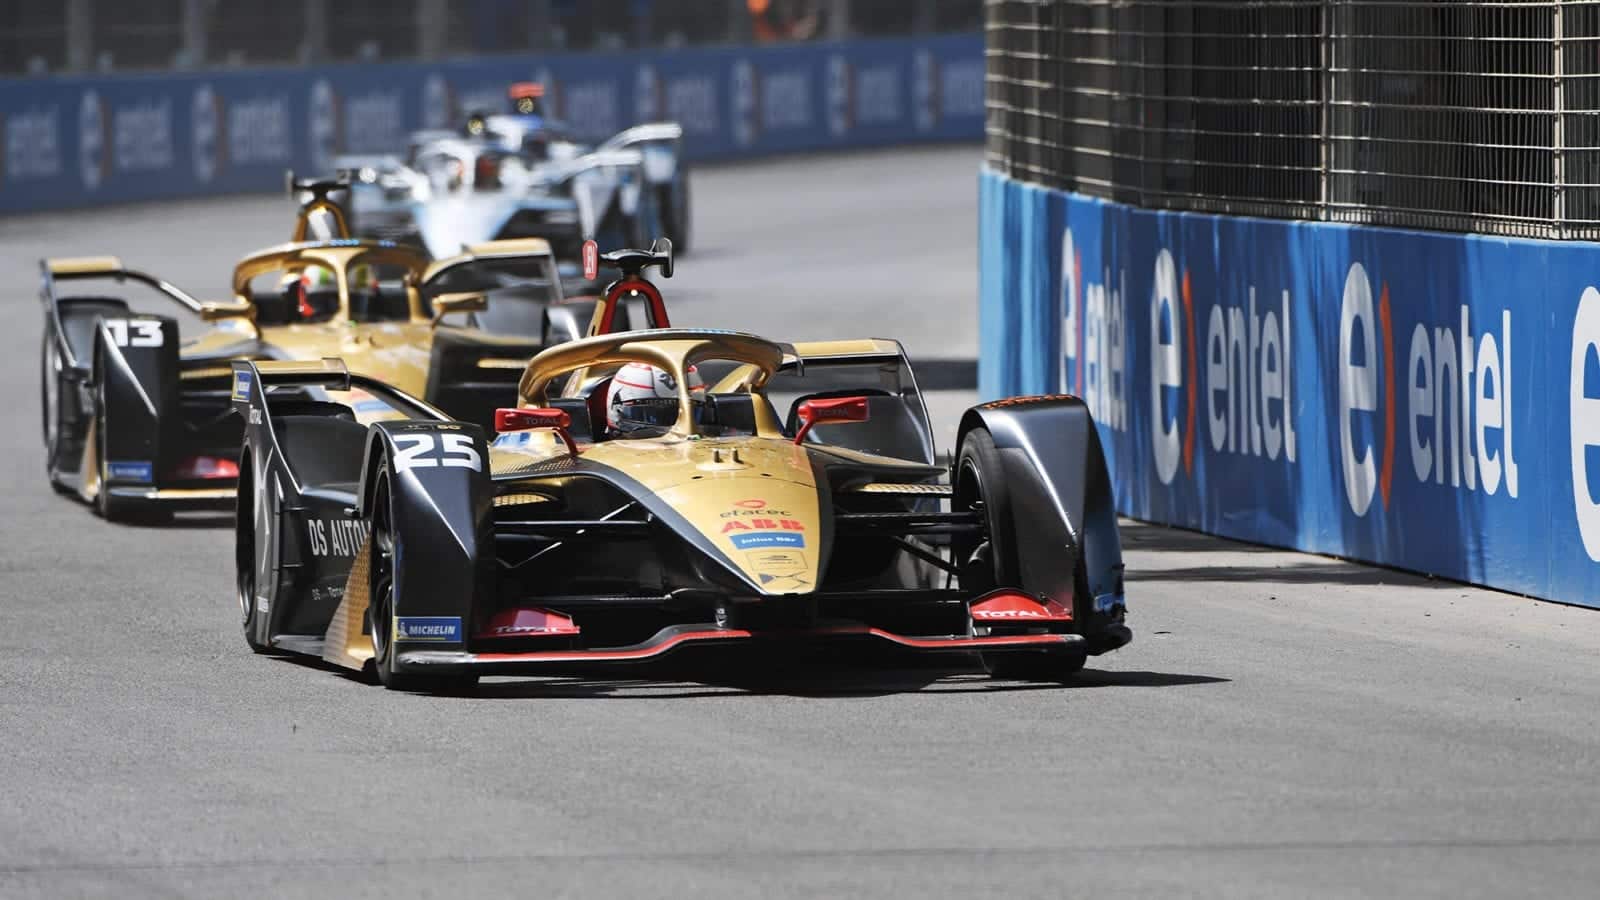 DS Techeetah cars in the 2020 Formula E season